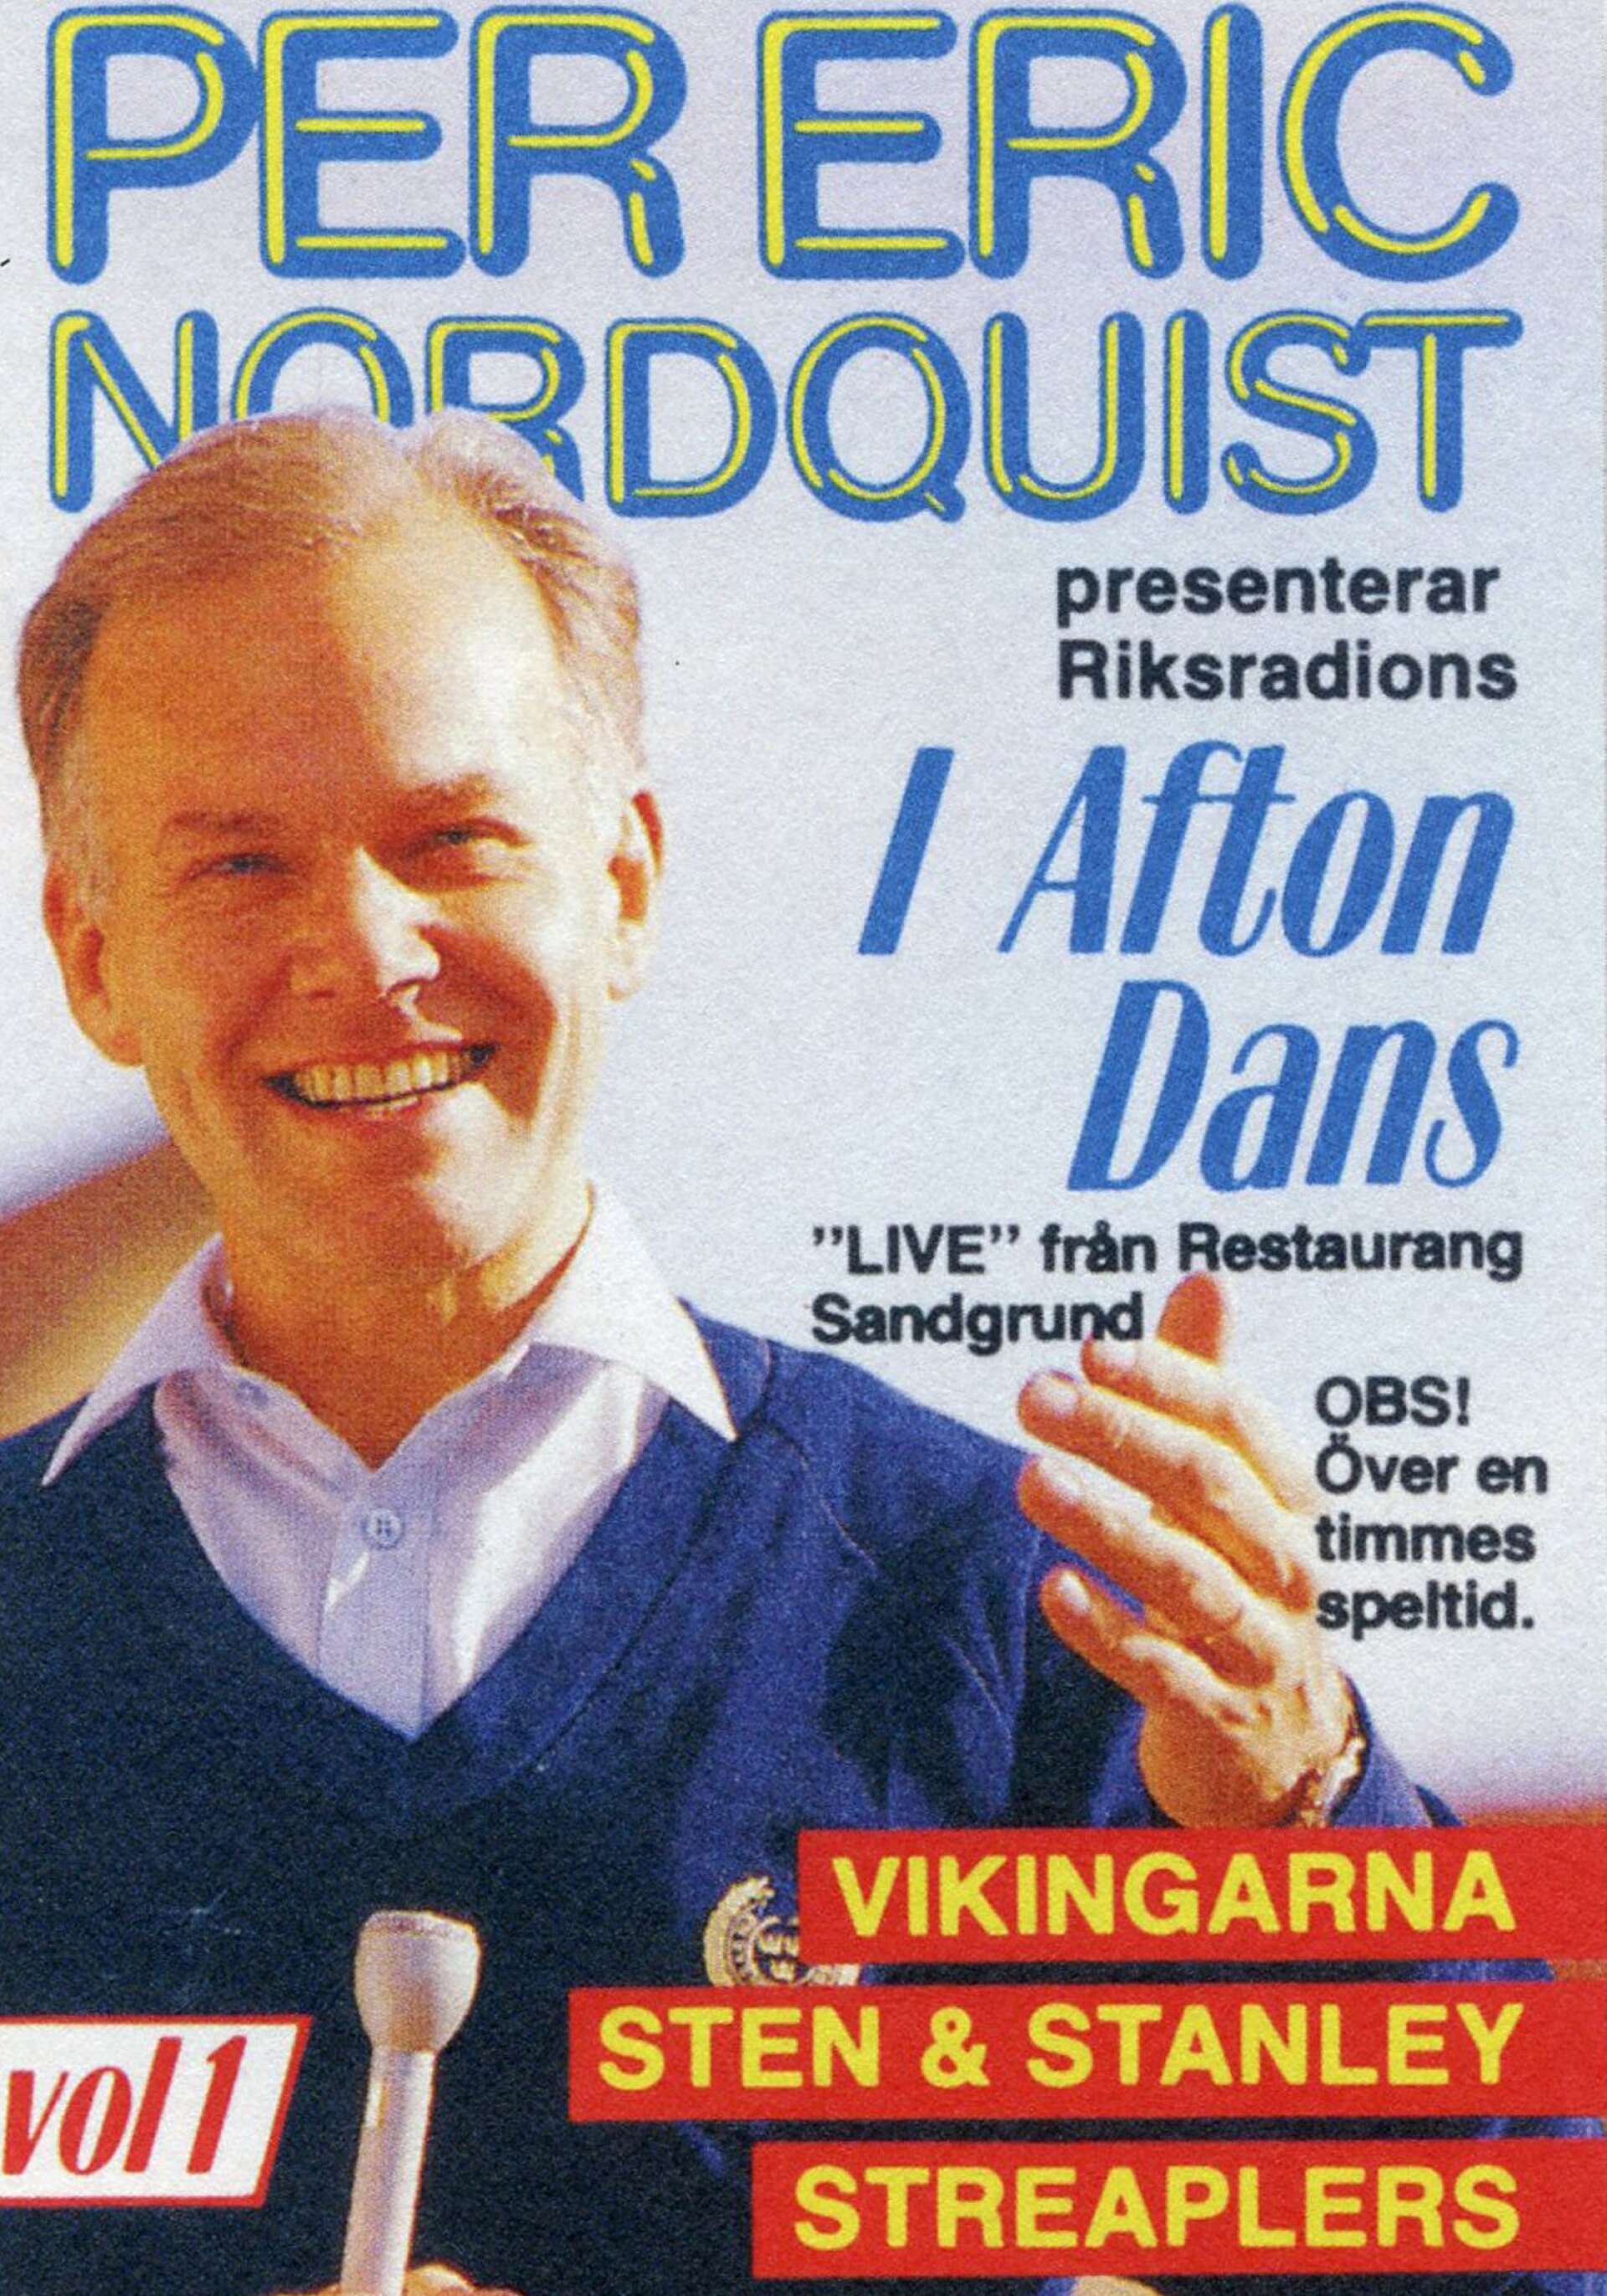 Radioprogrammet I afton dans sändes ofta från Sandgrund, många gånger med Per Eric Nordquist som programledare.